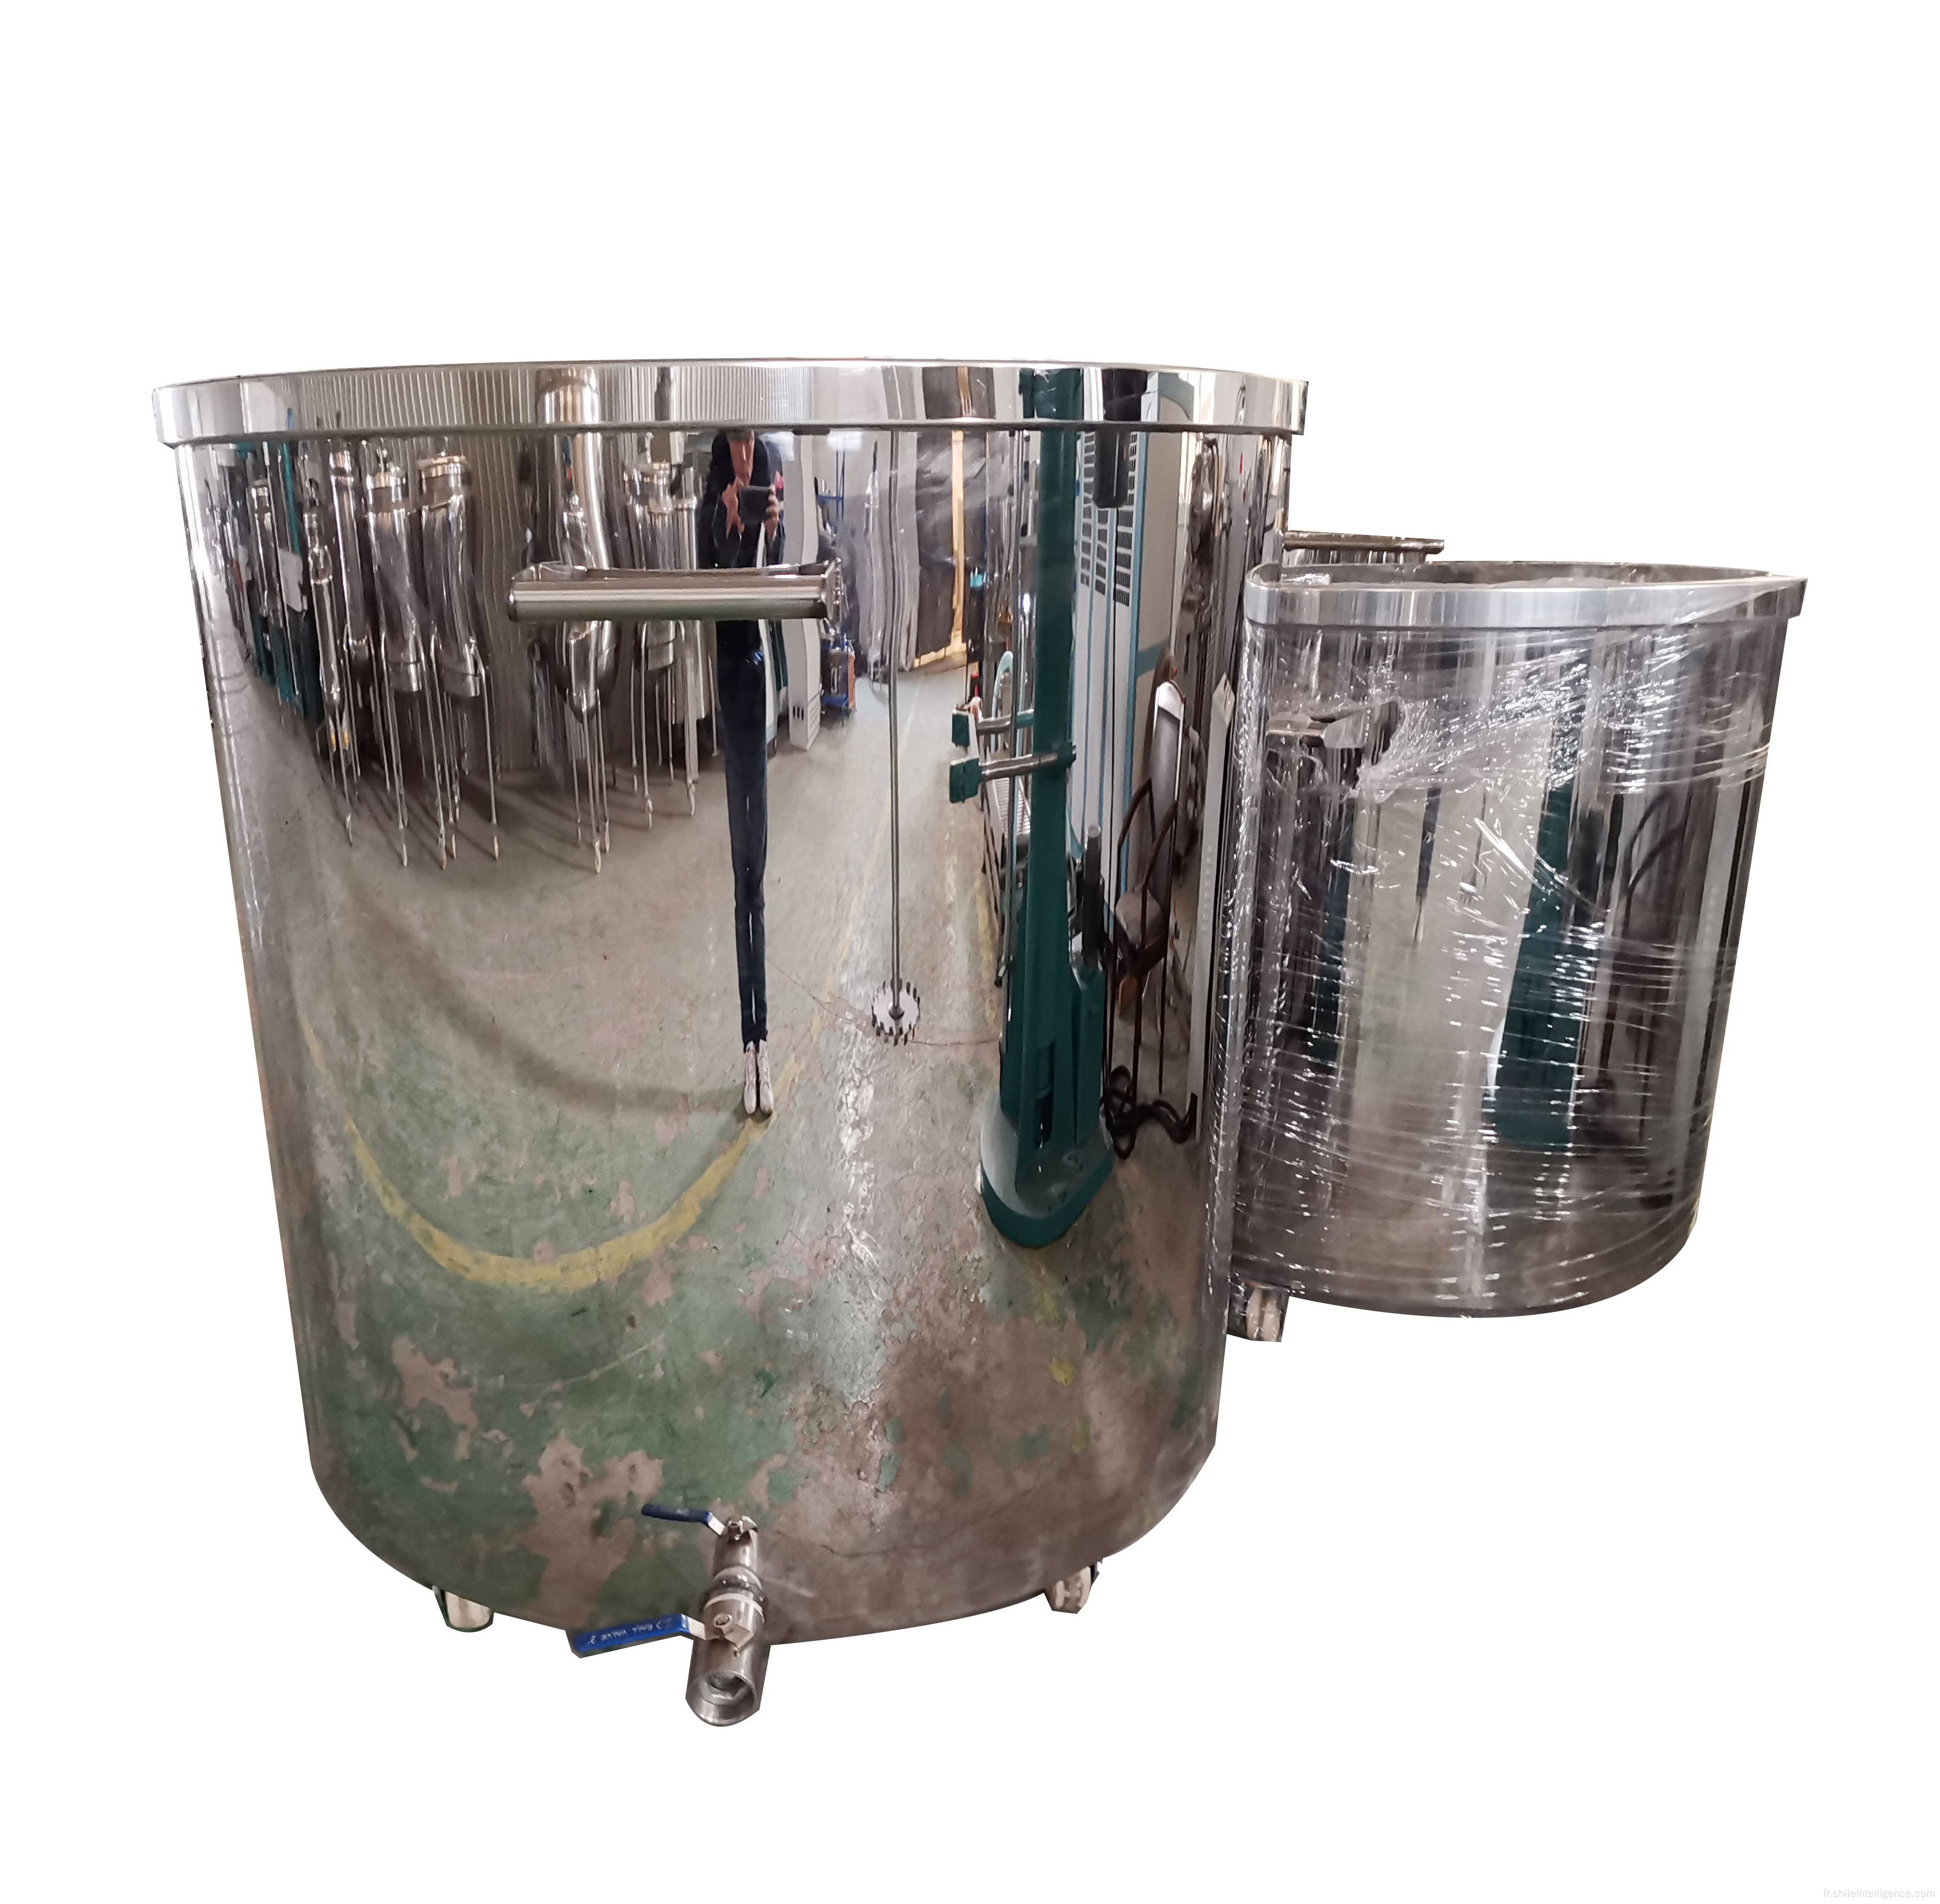 Réservoir de stockage en acier inoxydable prix usine 1L-10000L